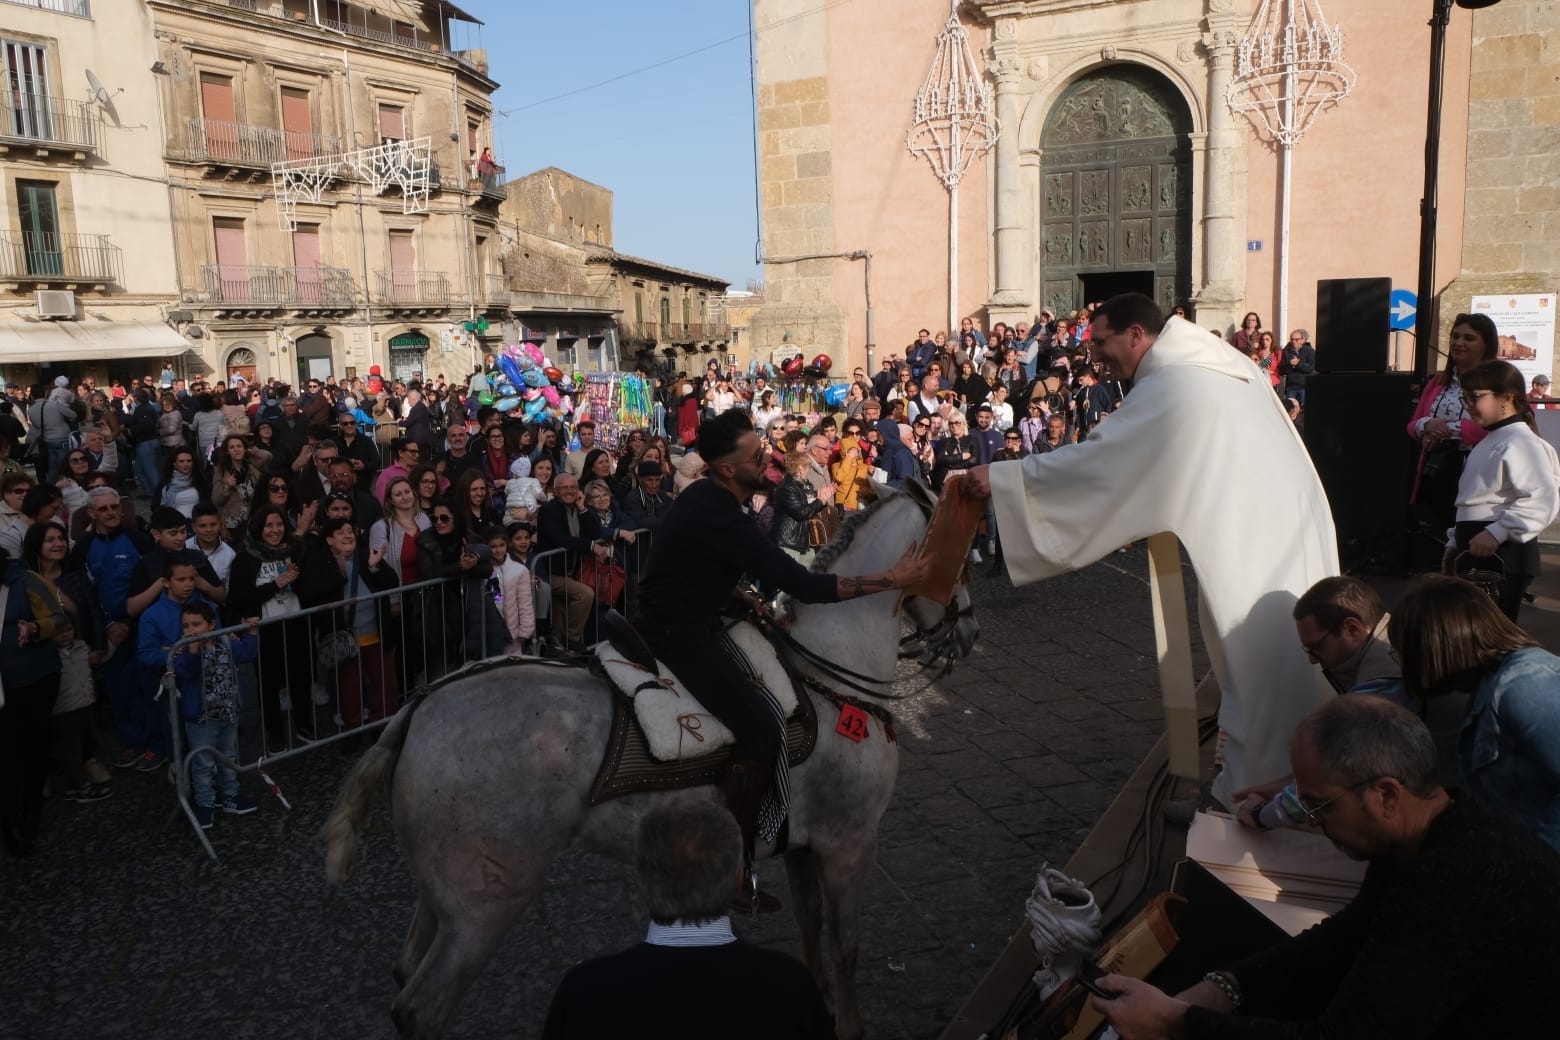 10 Lo splendore di San Francesco di Paola a Caltagirone: il corteo equestre e l'esibizione degli sbandieratori.